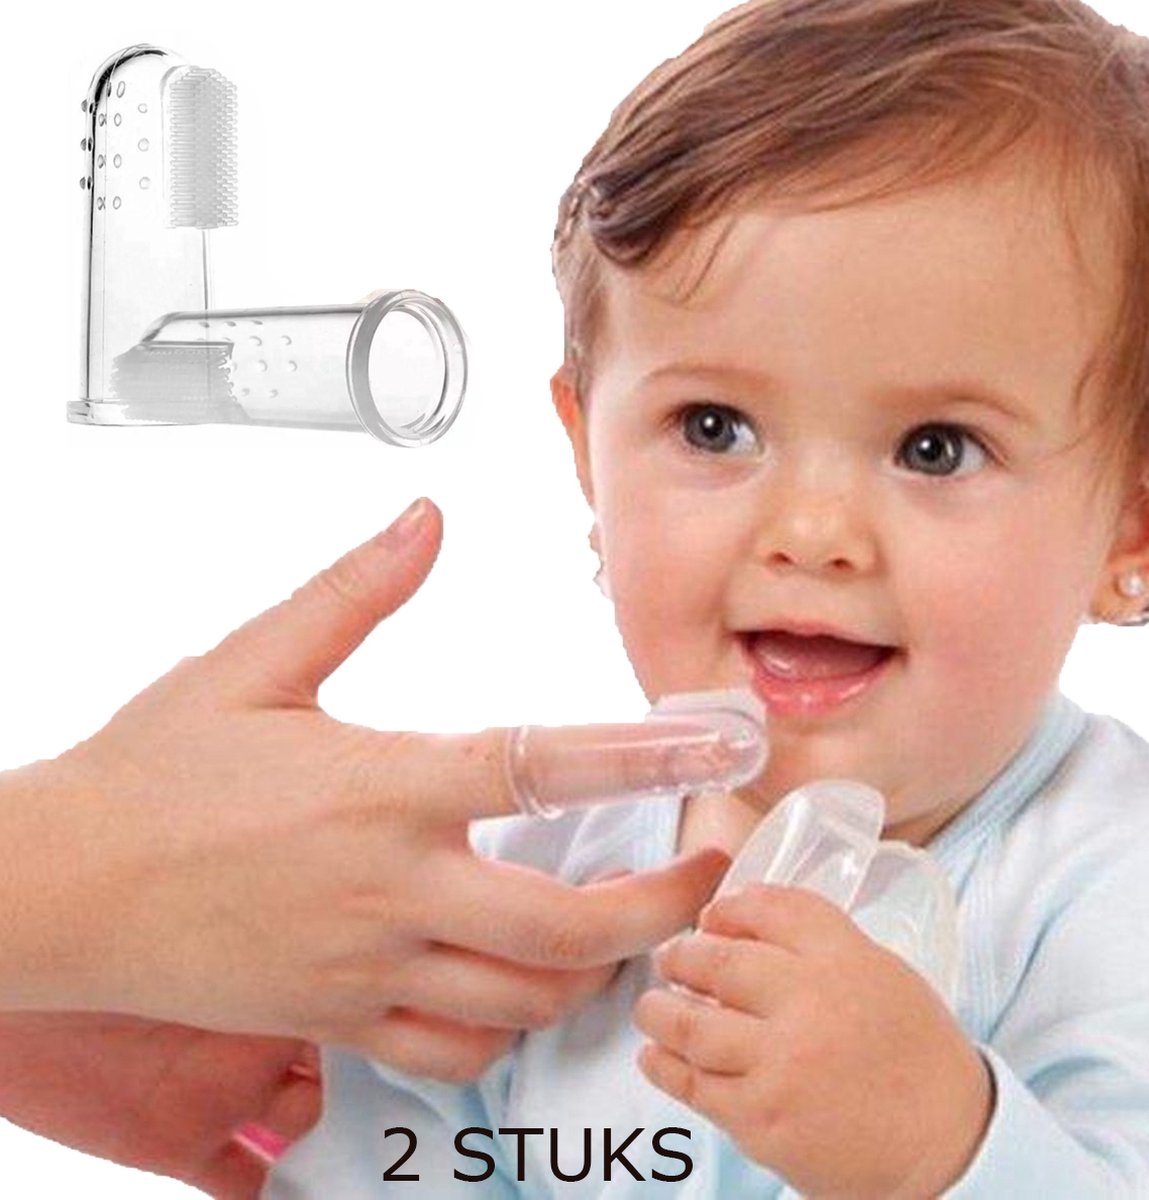 Baby silicone tandenborstel , vinger tandenborstel, baby/peuter, jongen meisje vingertandenborstel. 2 stuks.